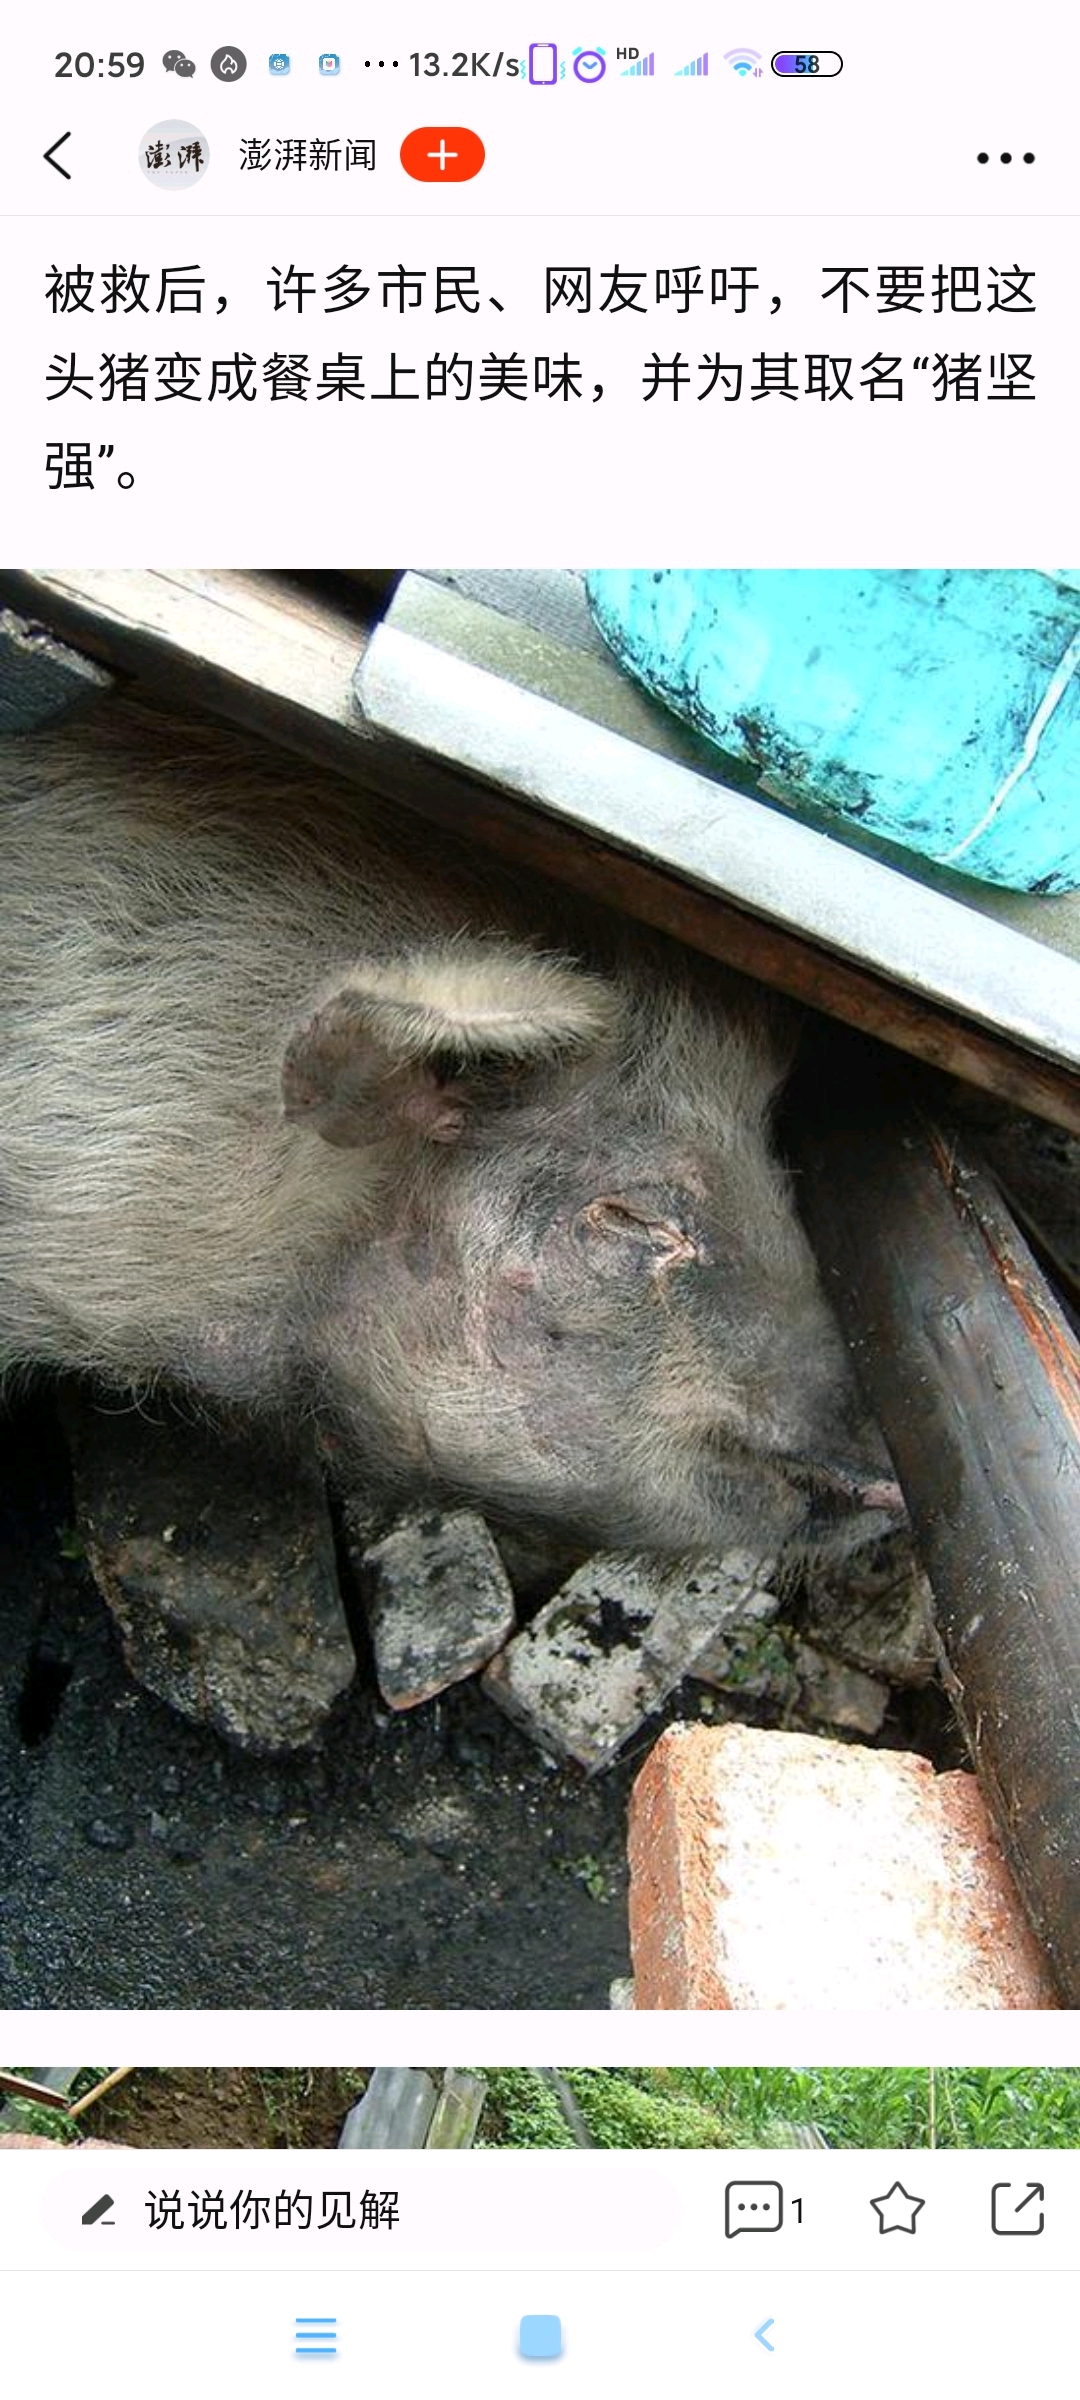 汶川地震猪坚强的故事图片